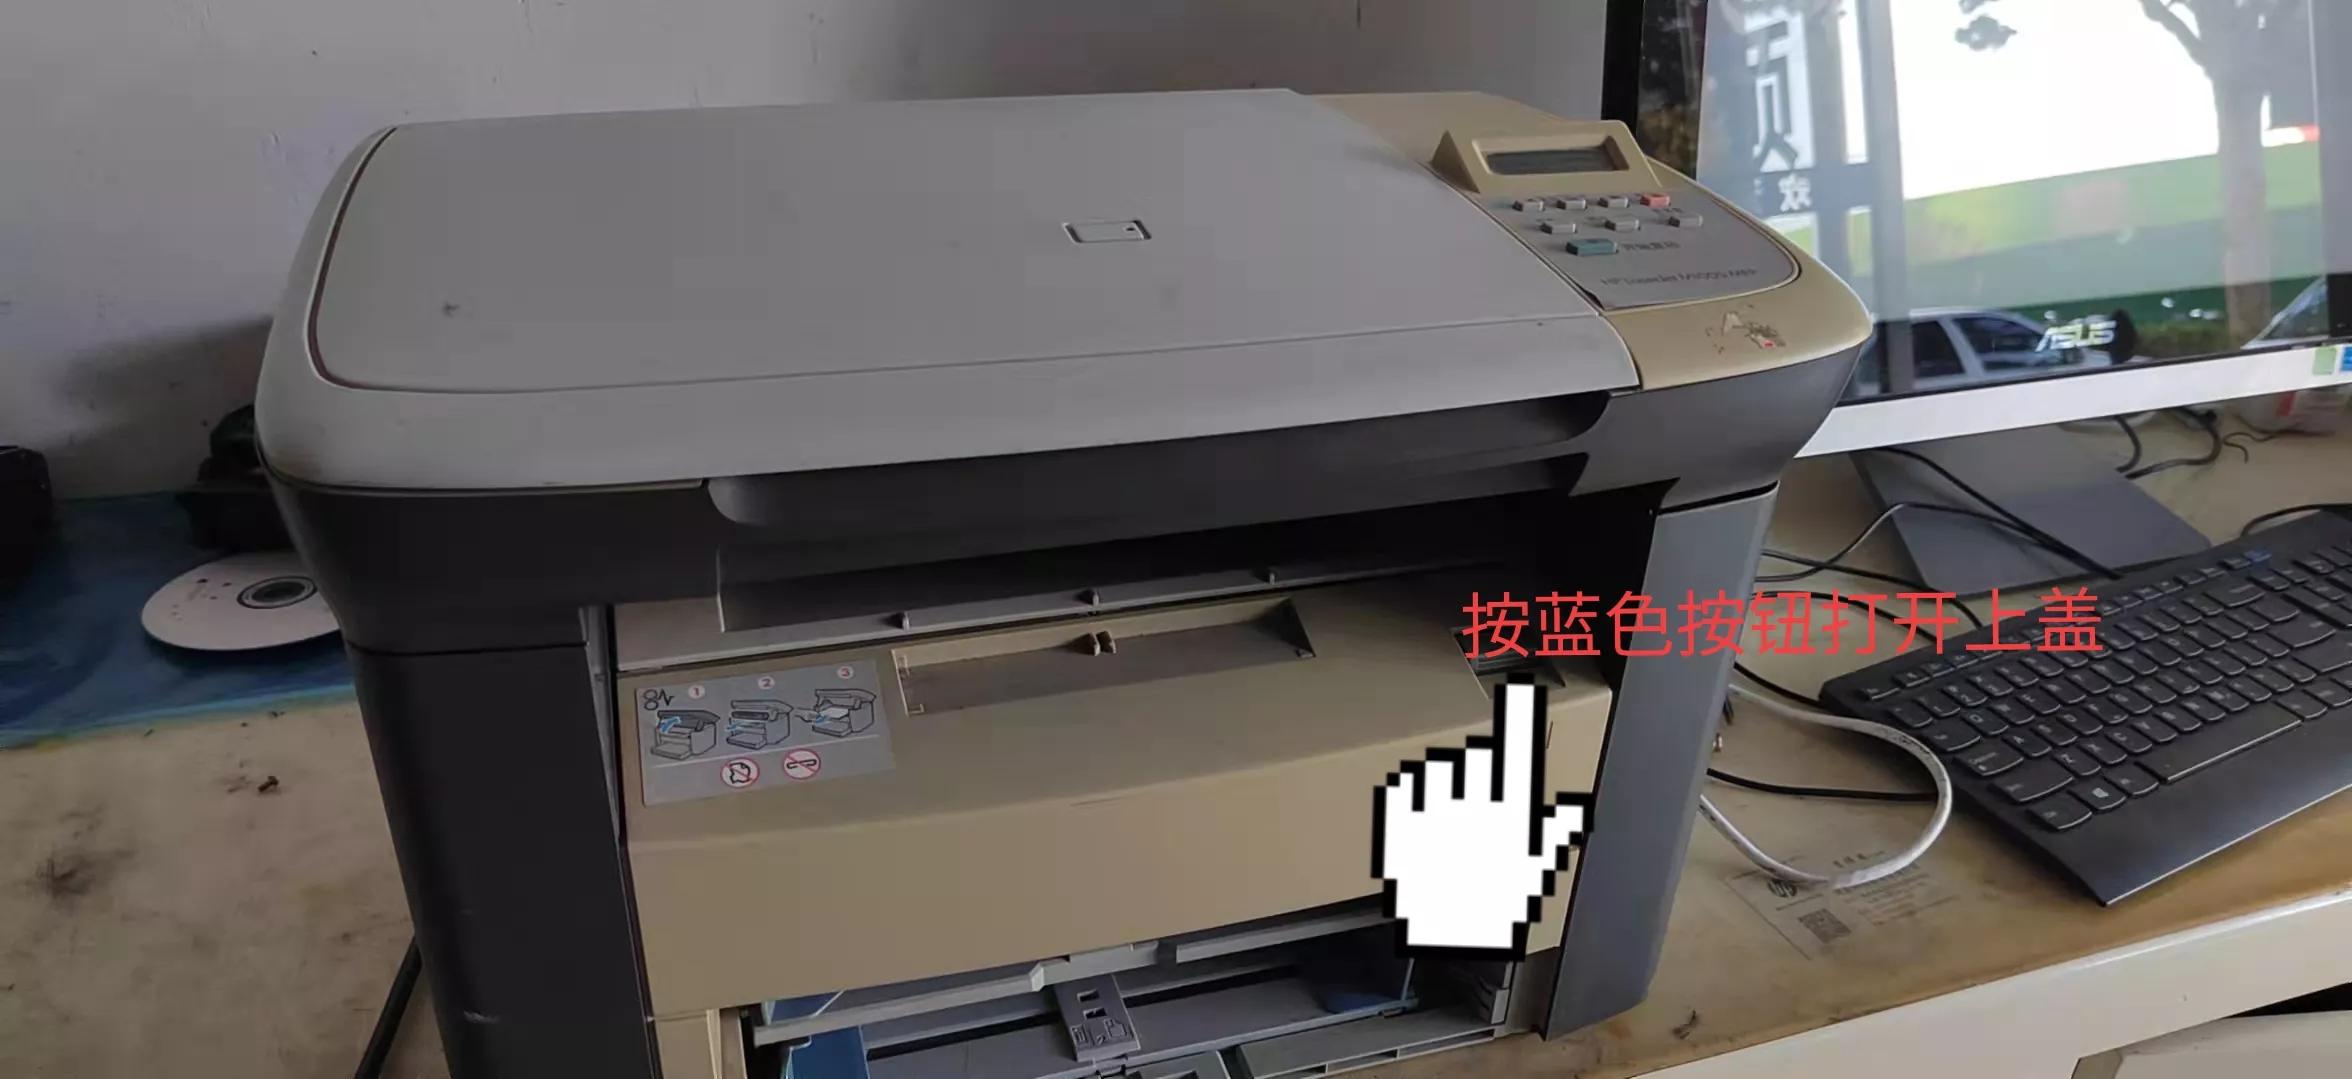 hp1005打印机怎么连接无线网wi（惠普m1005打印机搓不上纸）(1)